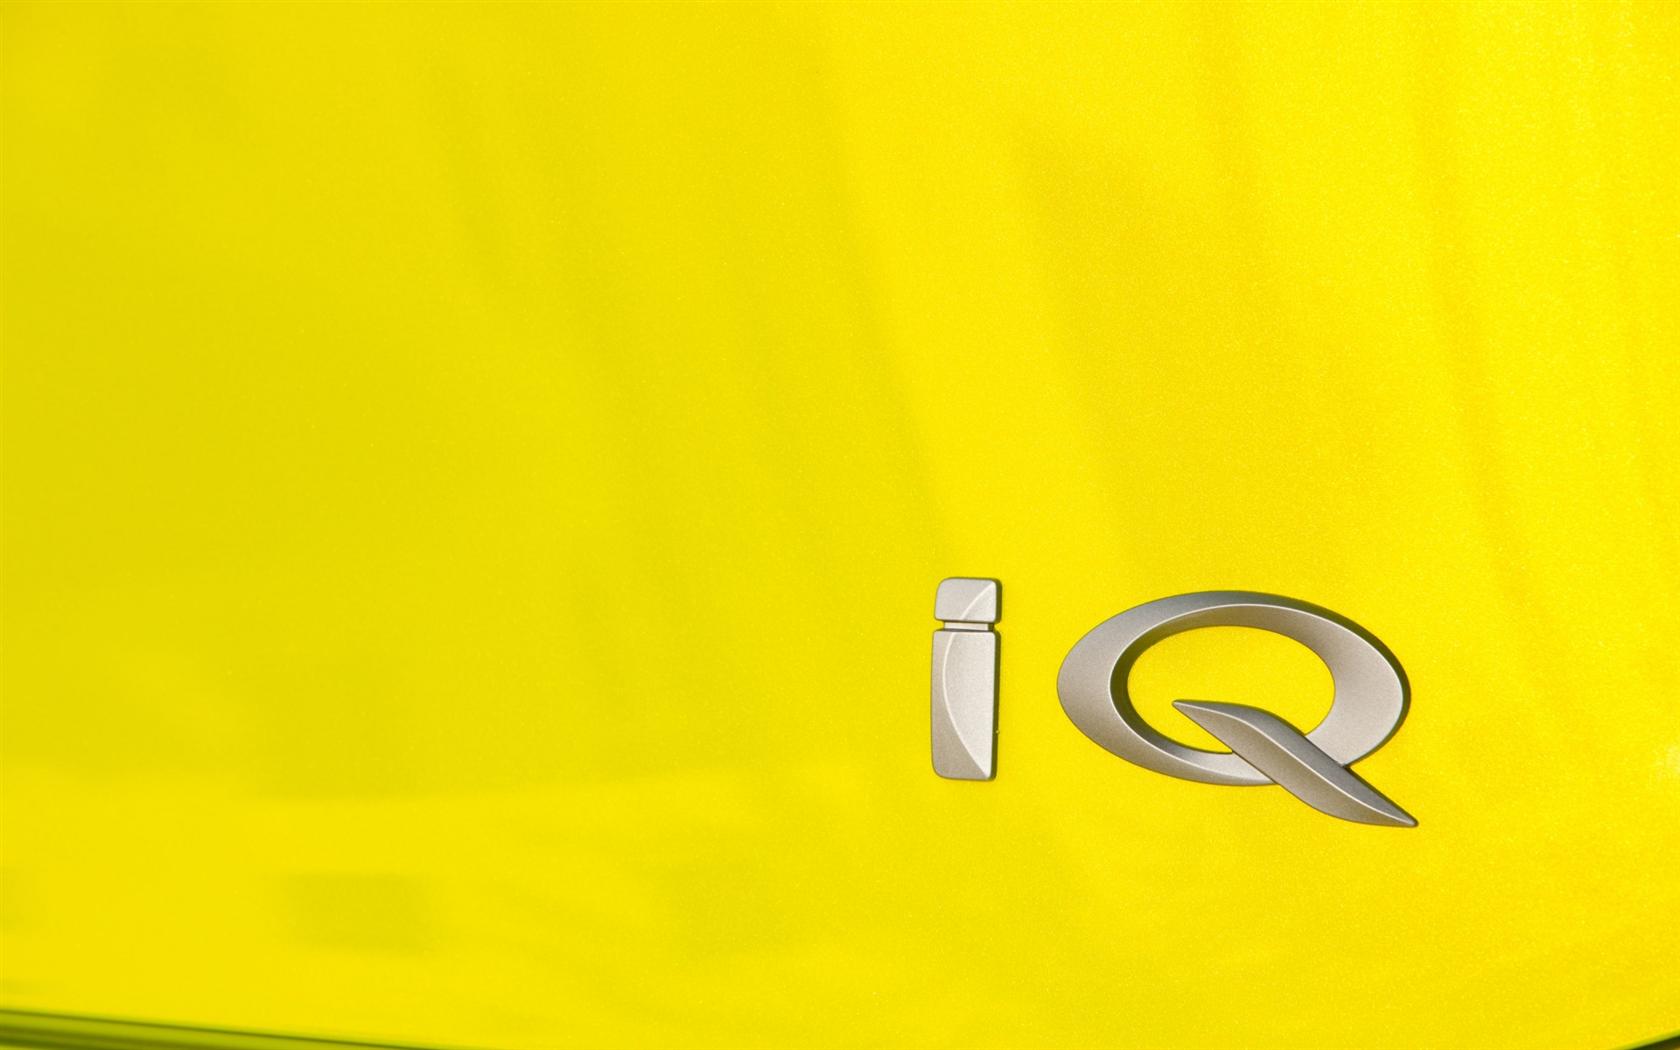 2009 Scion iQ Concept